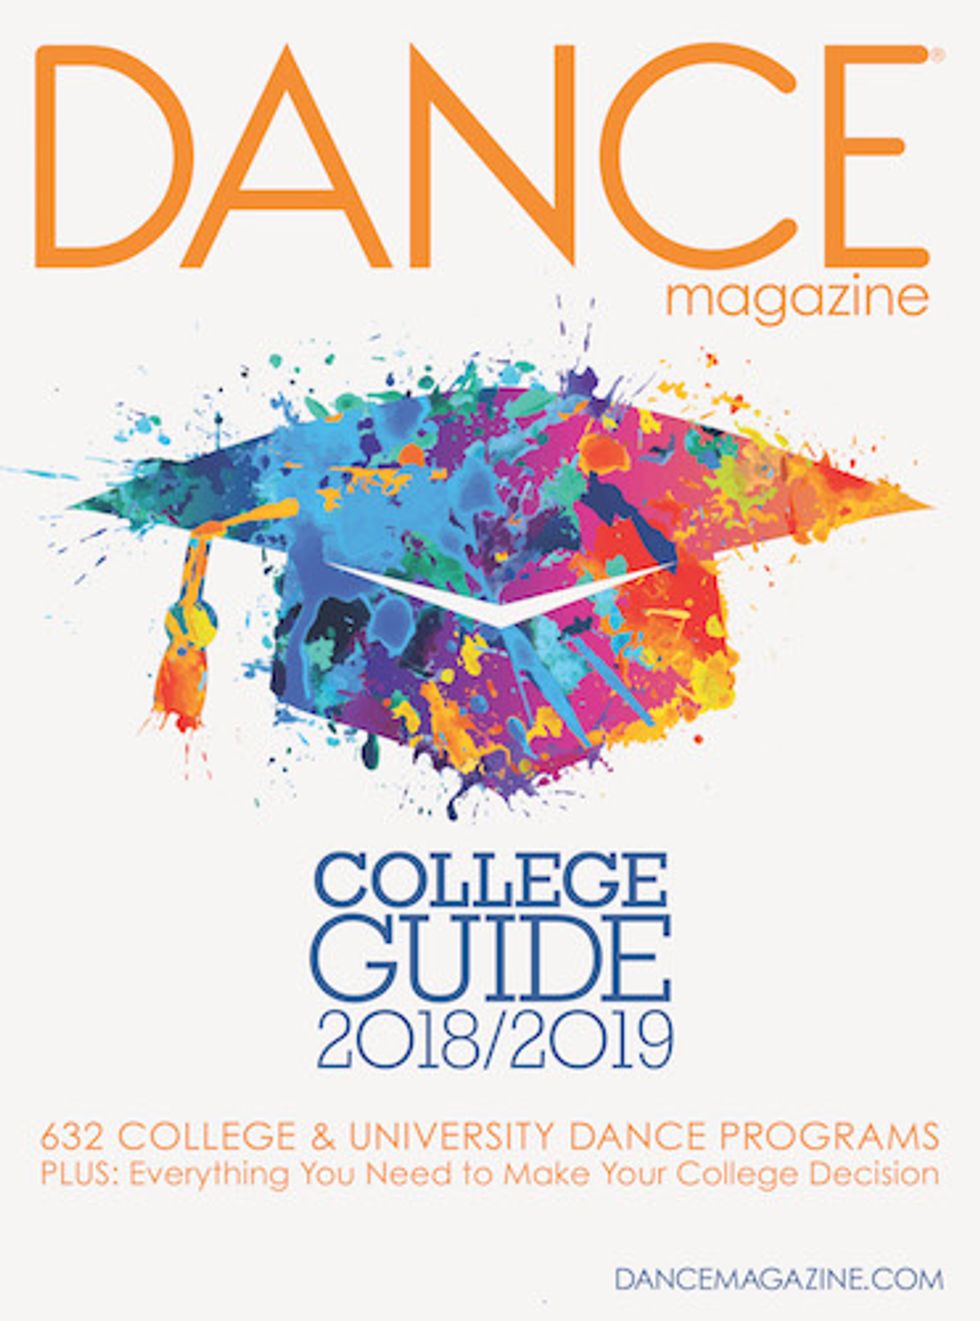 Dance Magazine College Guide